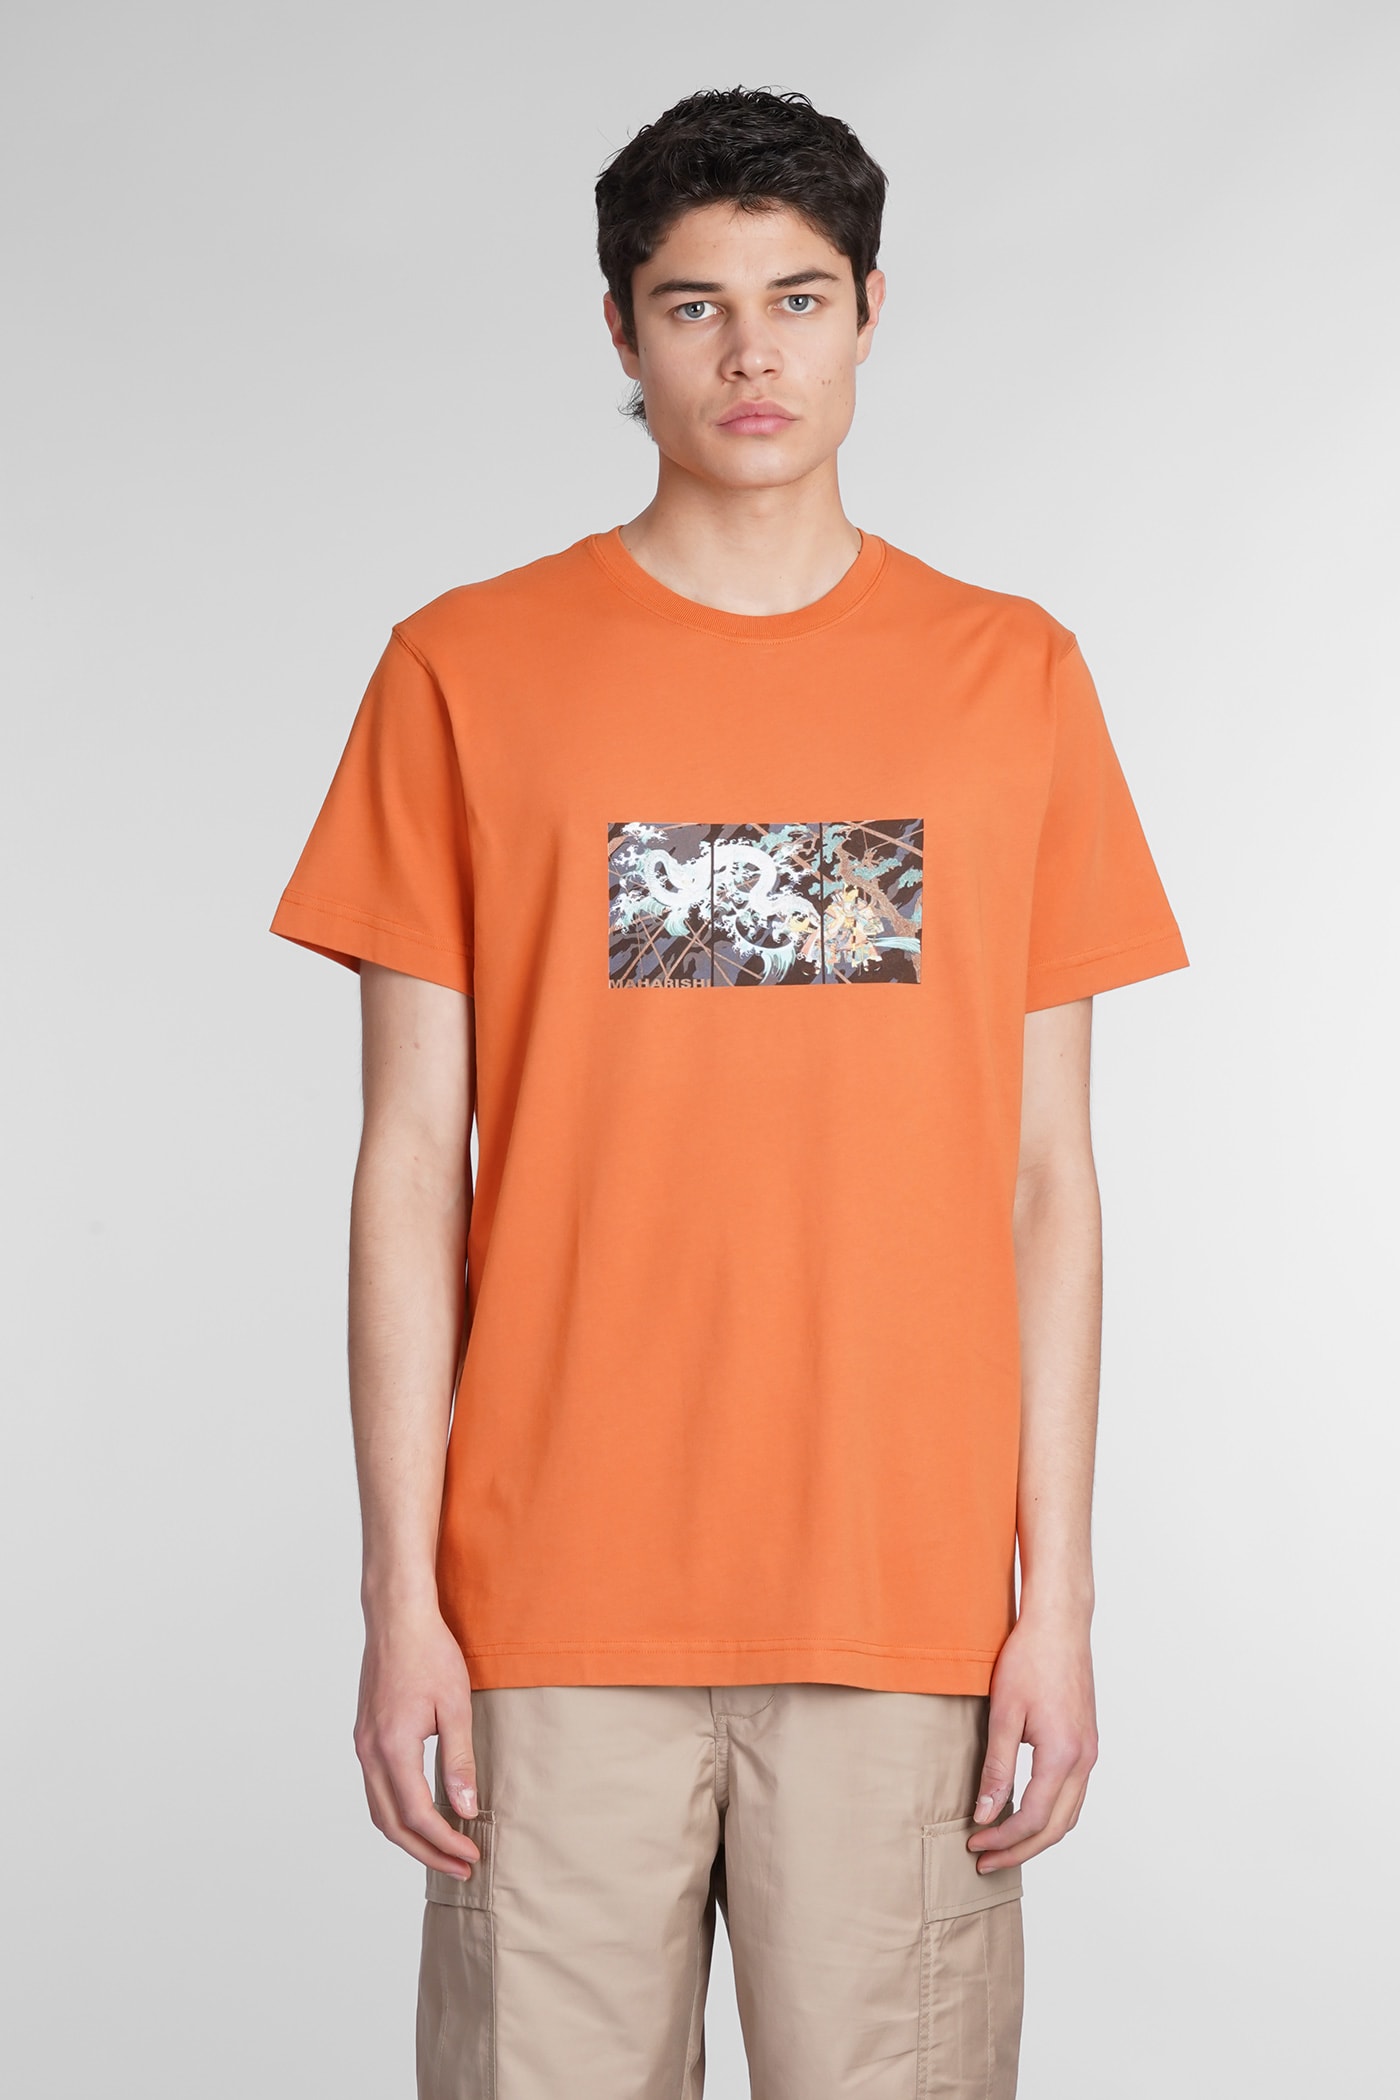 Maharishi T-shirt In Orange Cotton